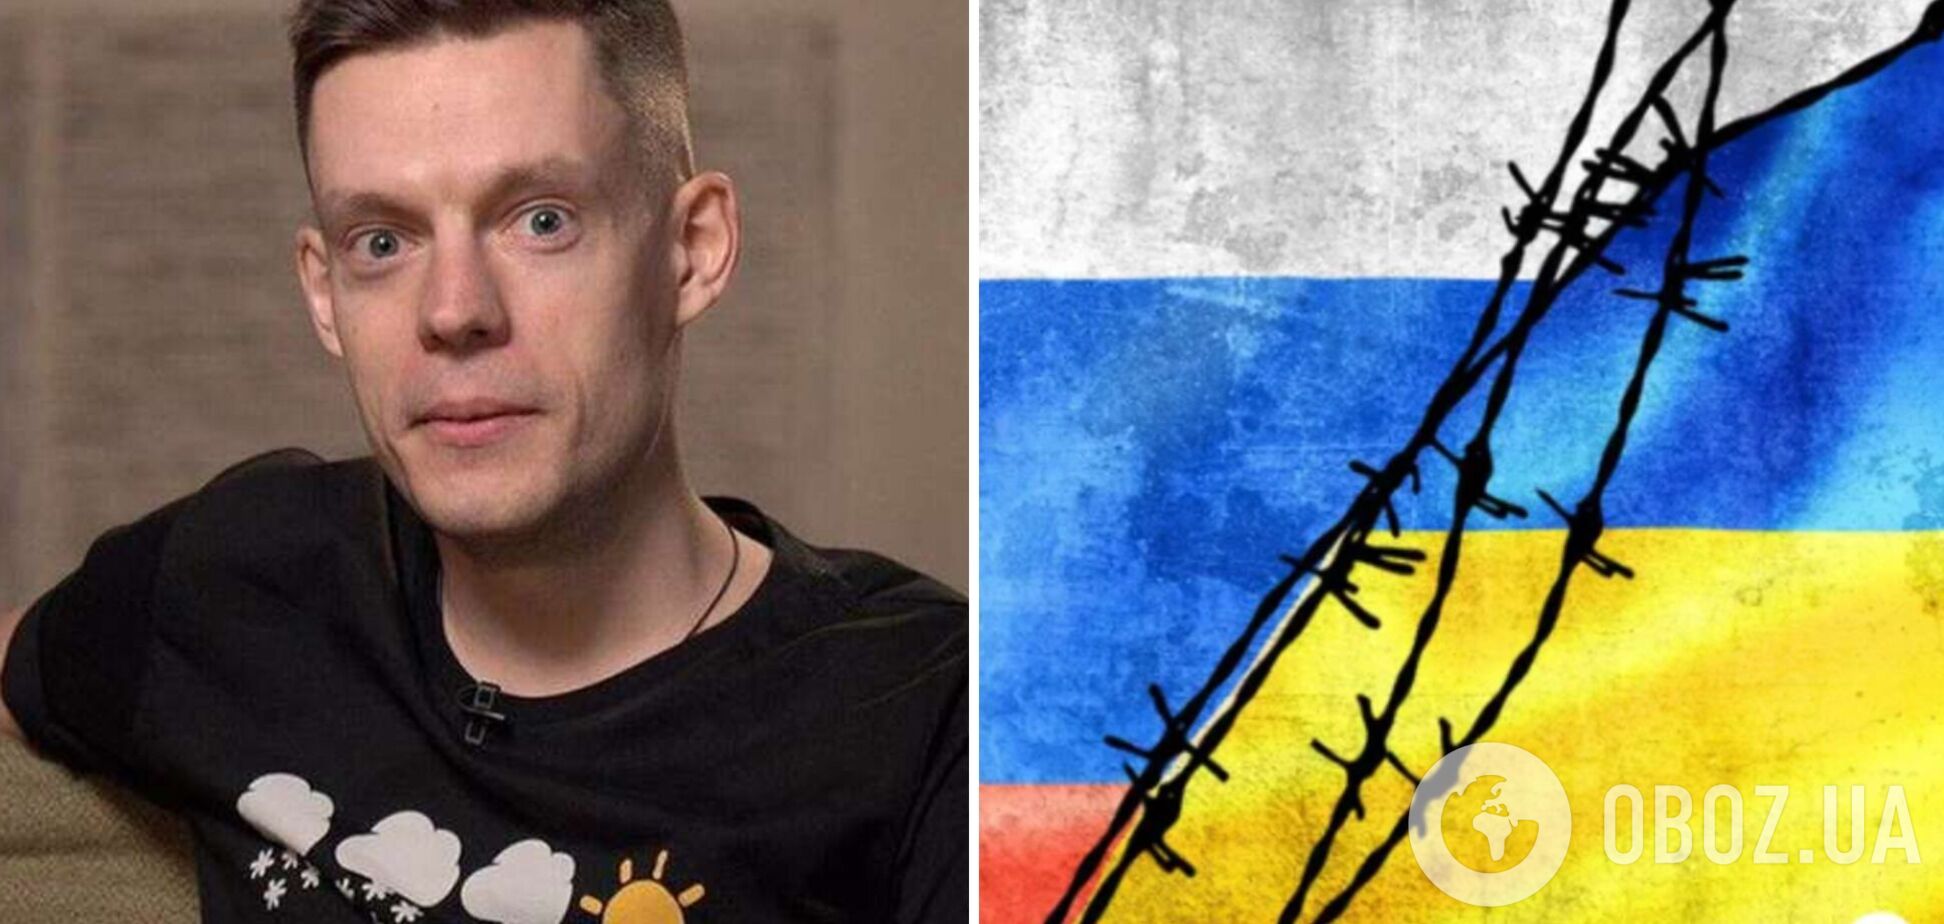 Юрия Дудя хотят объявить 'иностранным агентом' в России после его поста о поддержке Украины